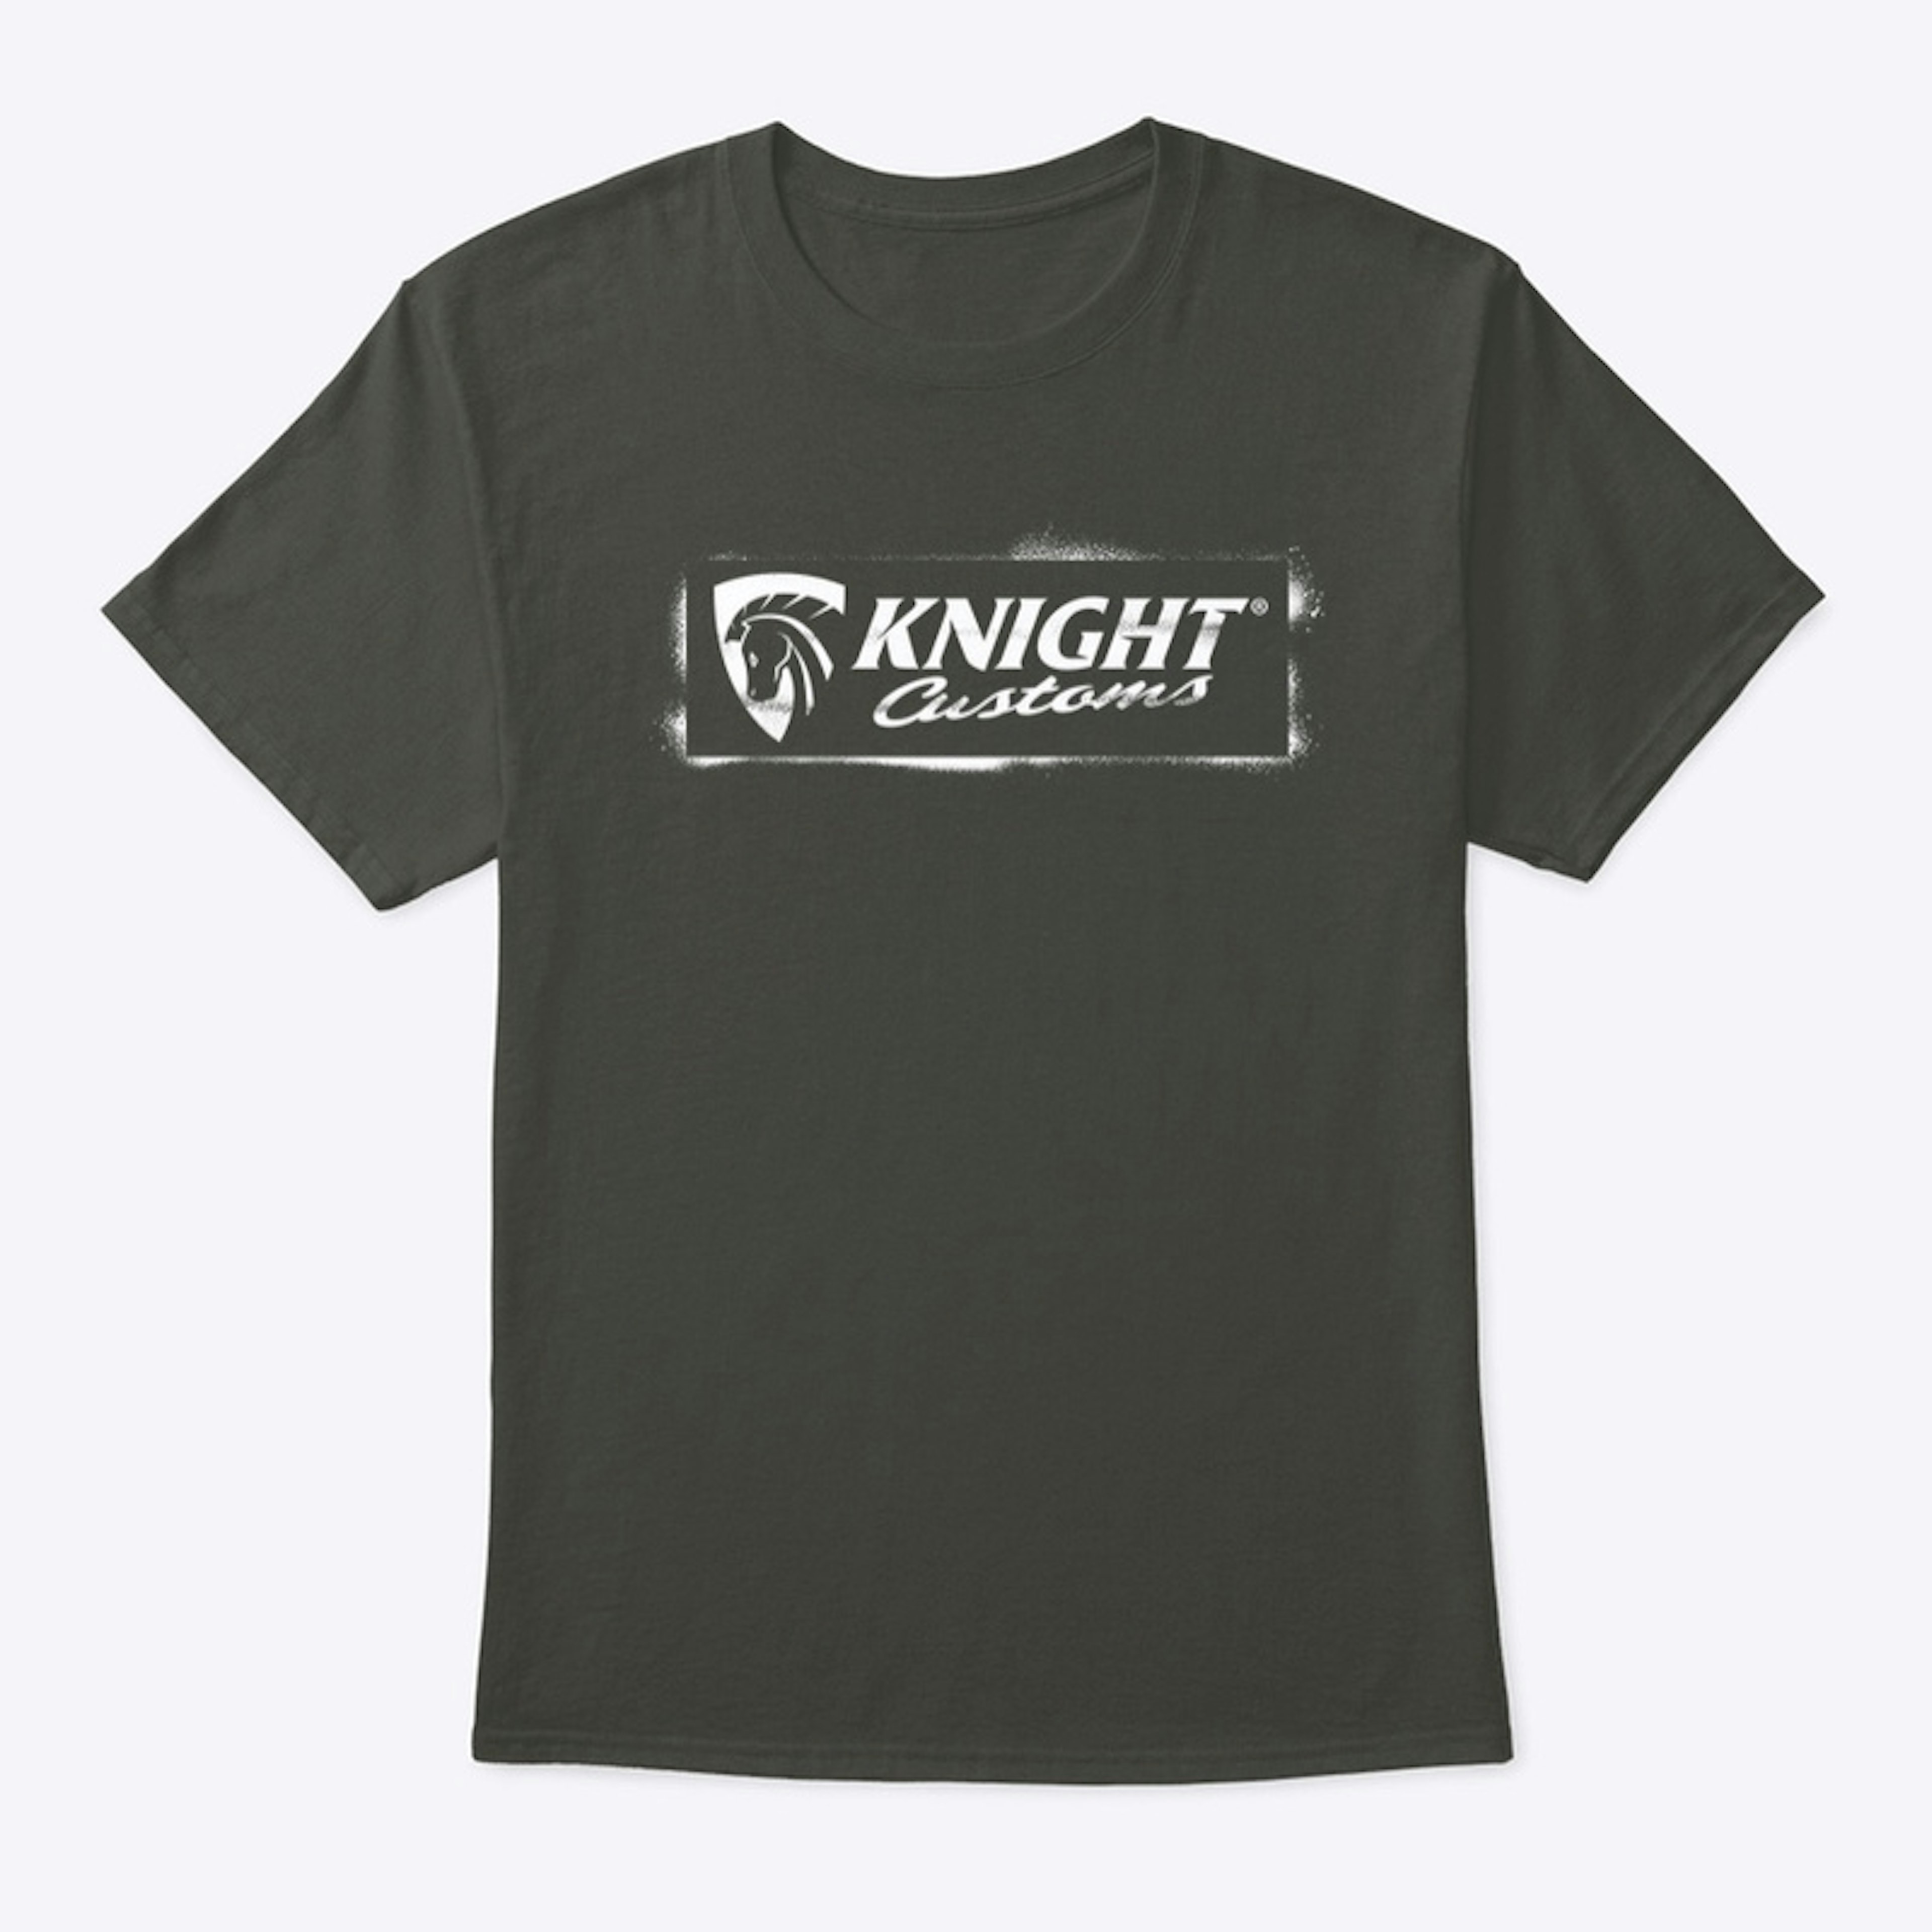 Knight Customs Stencil White logo